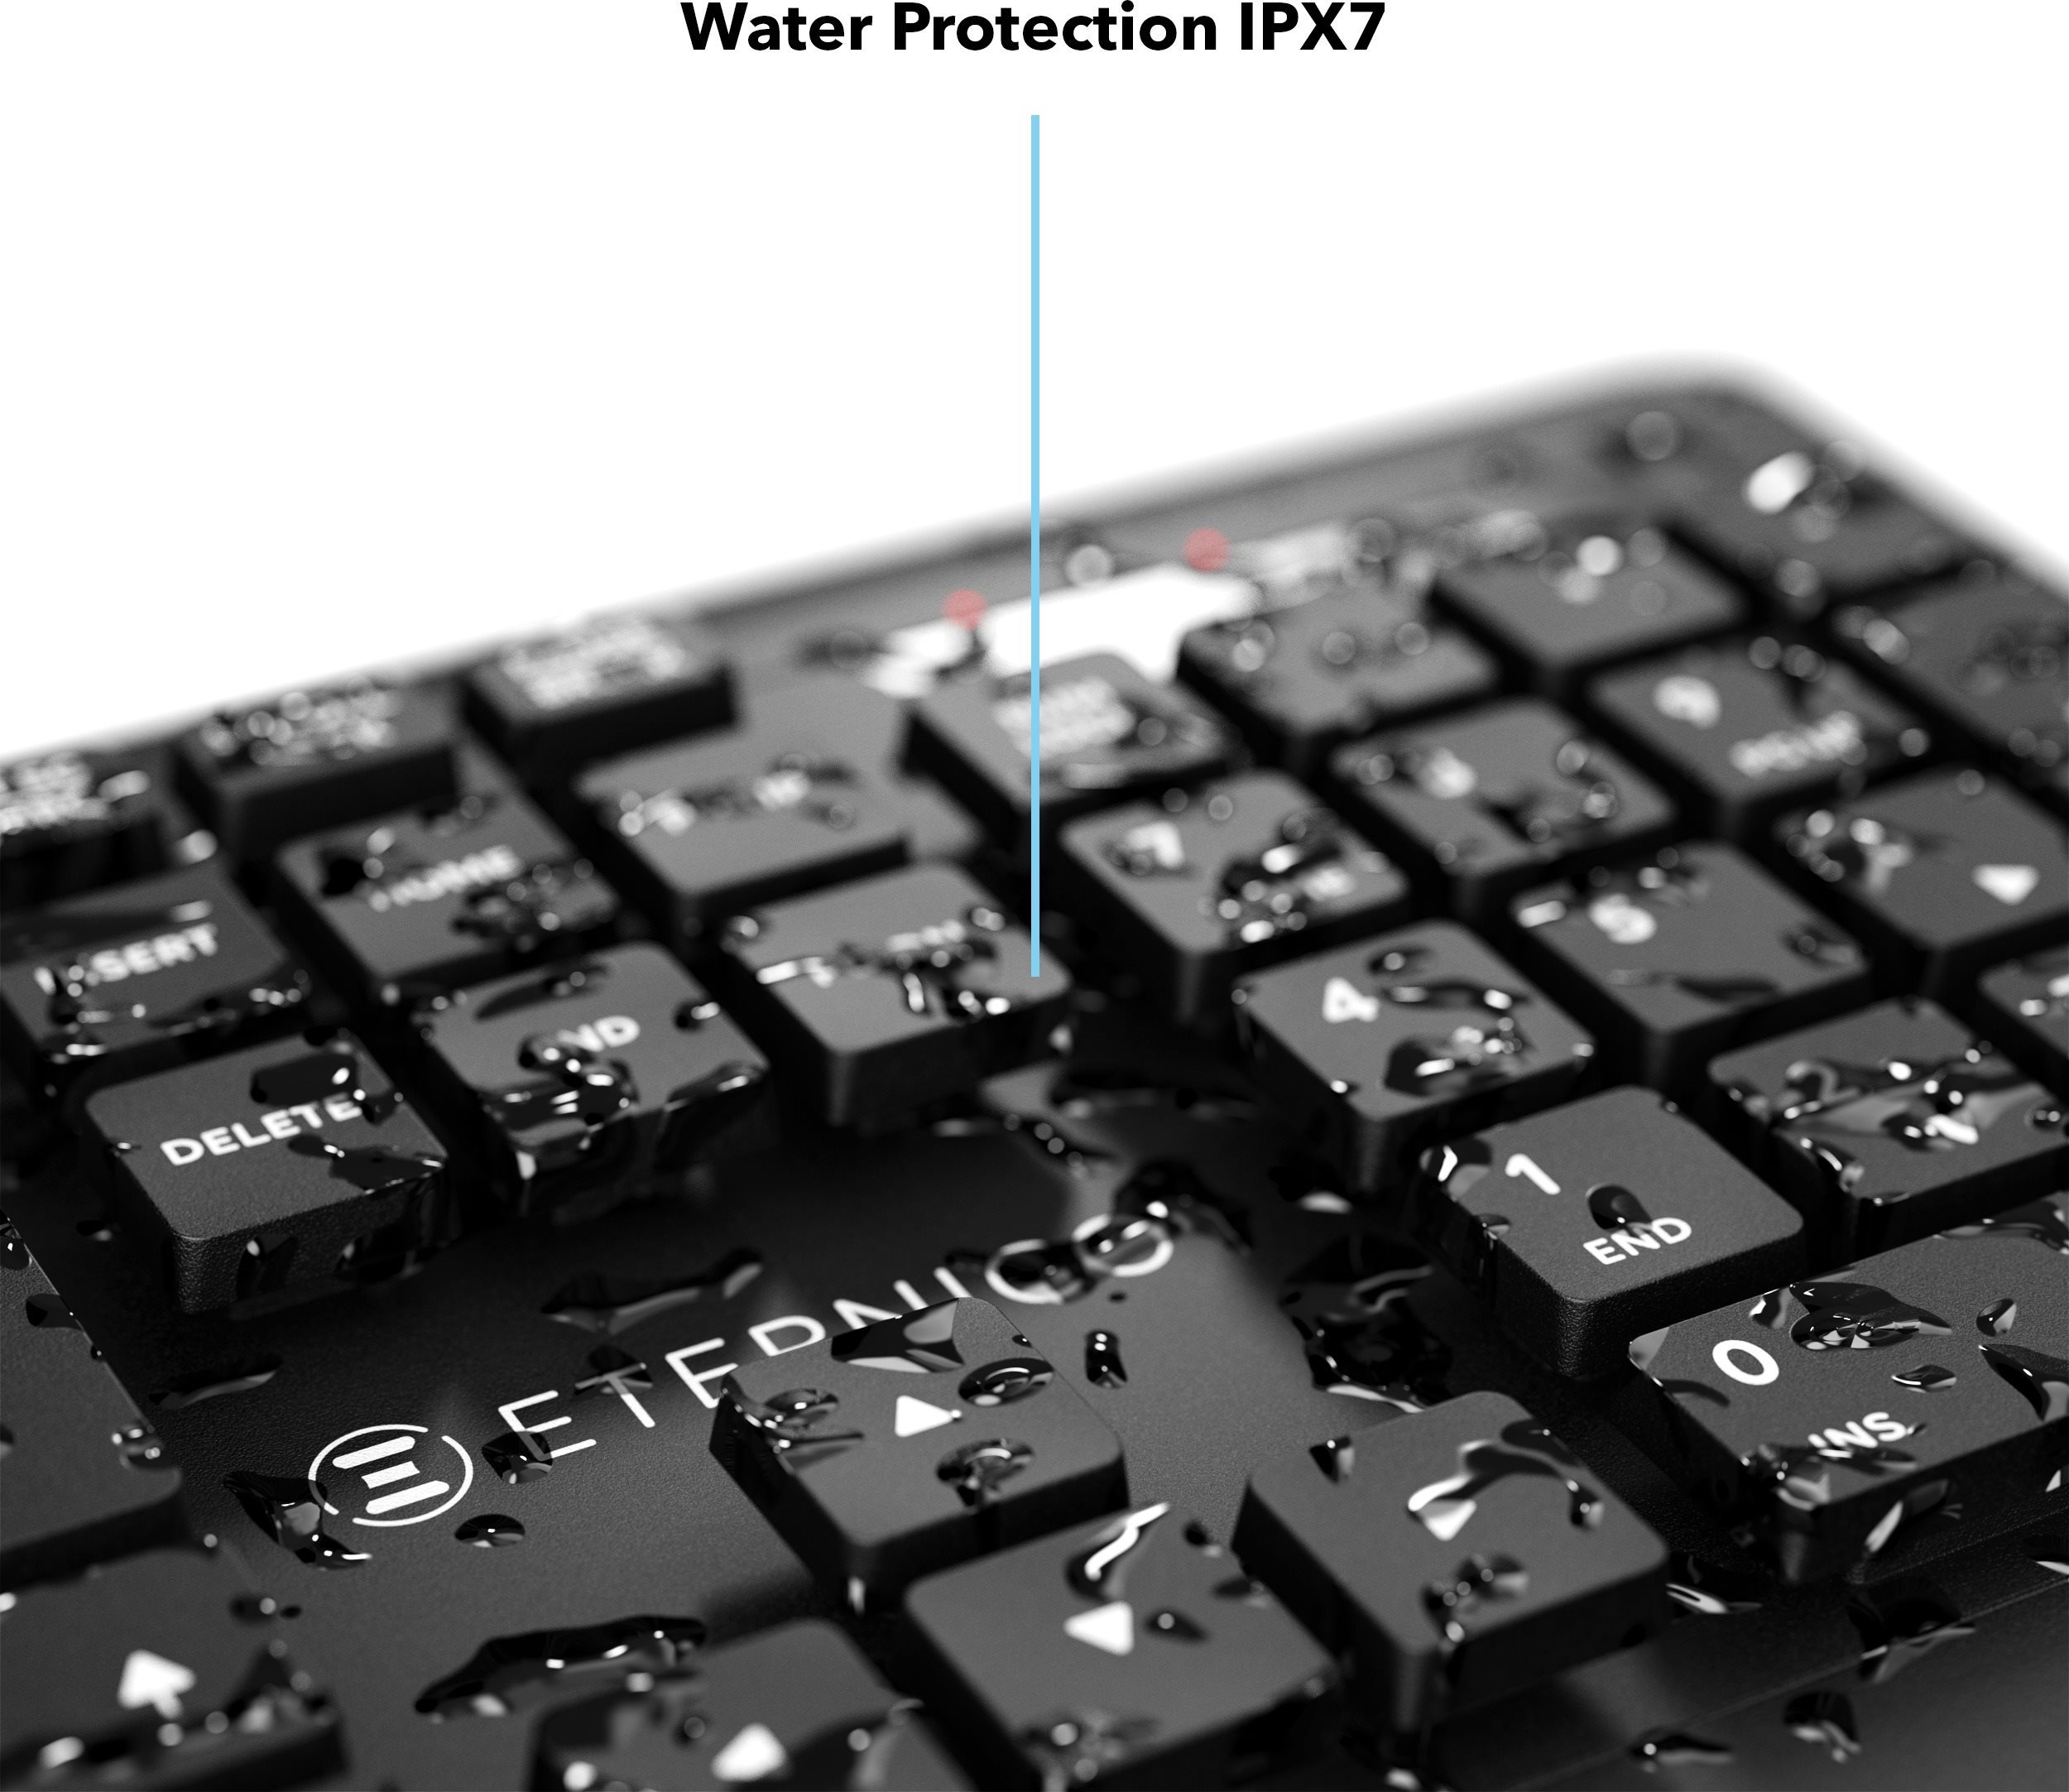 Billentyűzet Eternico Pro Keyboard Wateproof IPX7 KD2050 fekete - CZ/SK ...